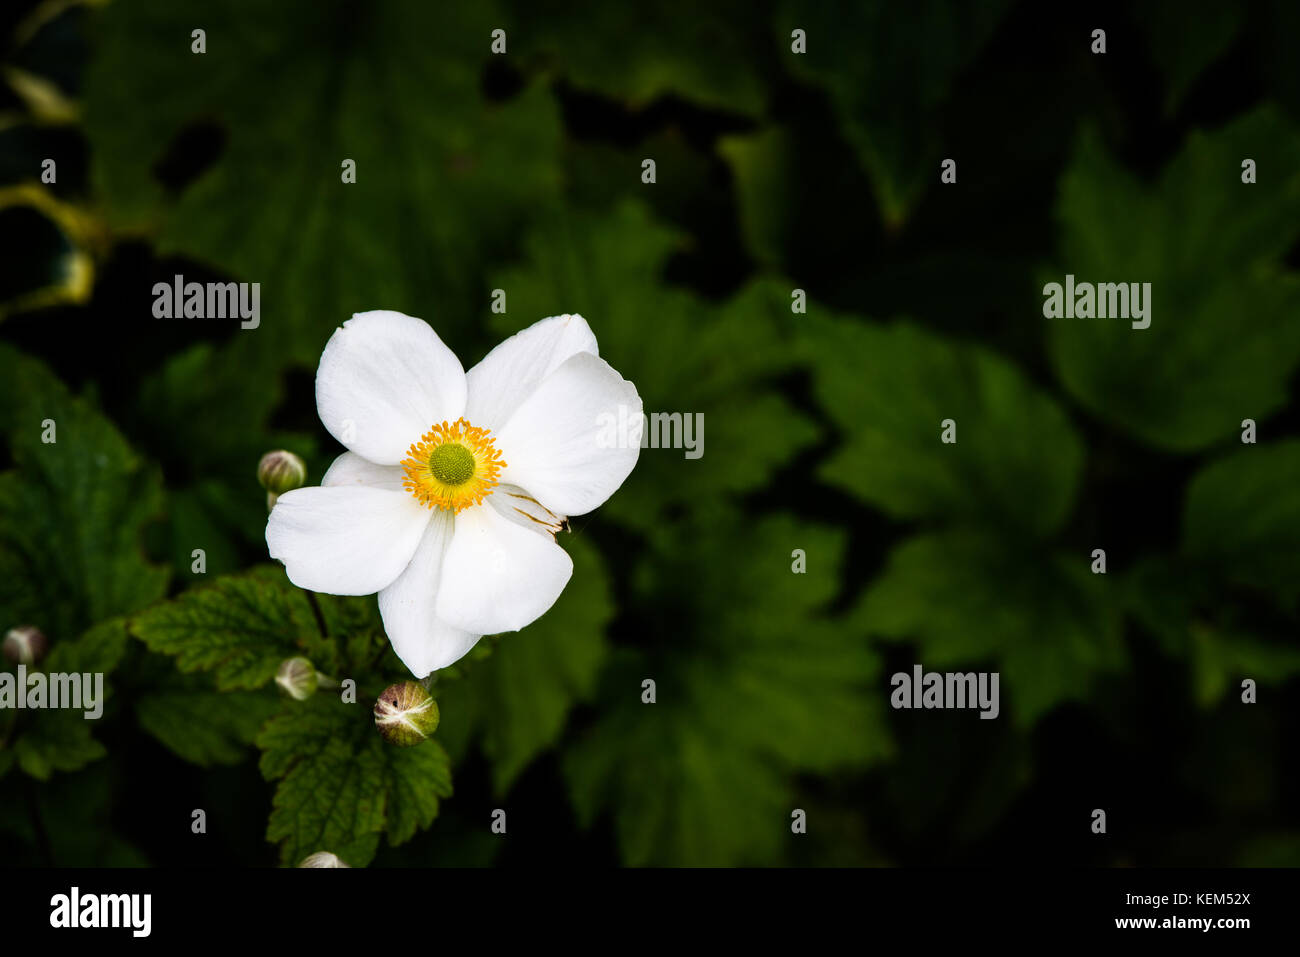 Japanese Windflower, Anemone x hybrida 'Honorine Jobert' Stock Photo